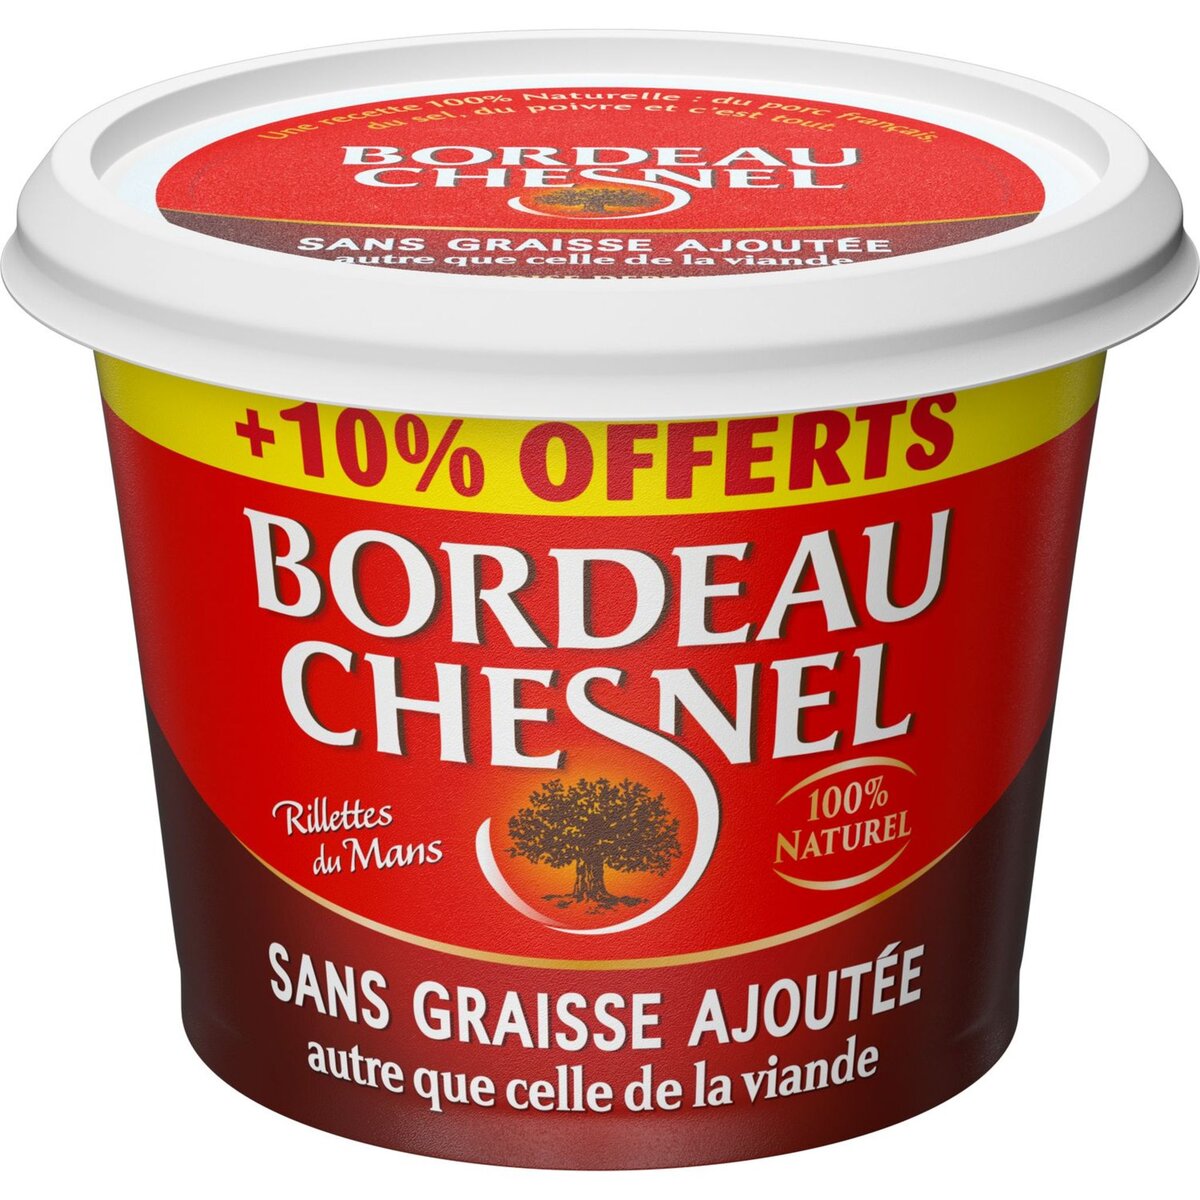 BORDEAU CHESNEL Chesnel rillette pur porc sans graisse ajoutée +10% 242g